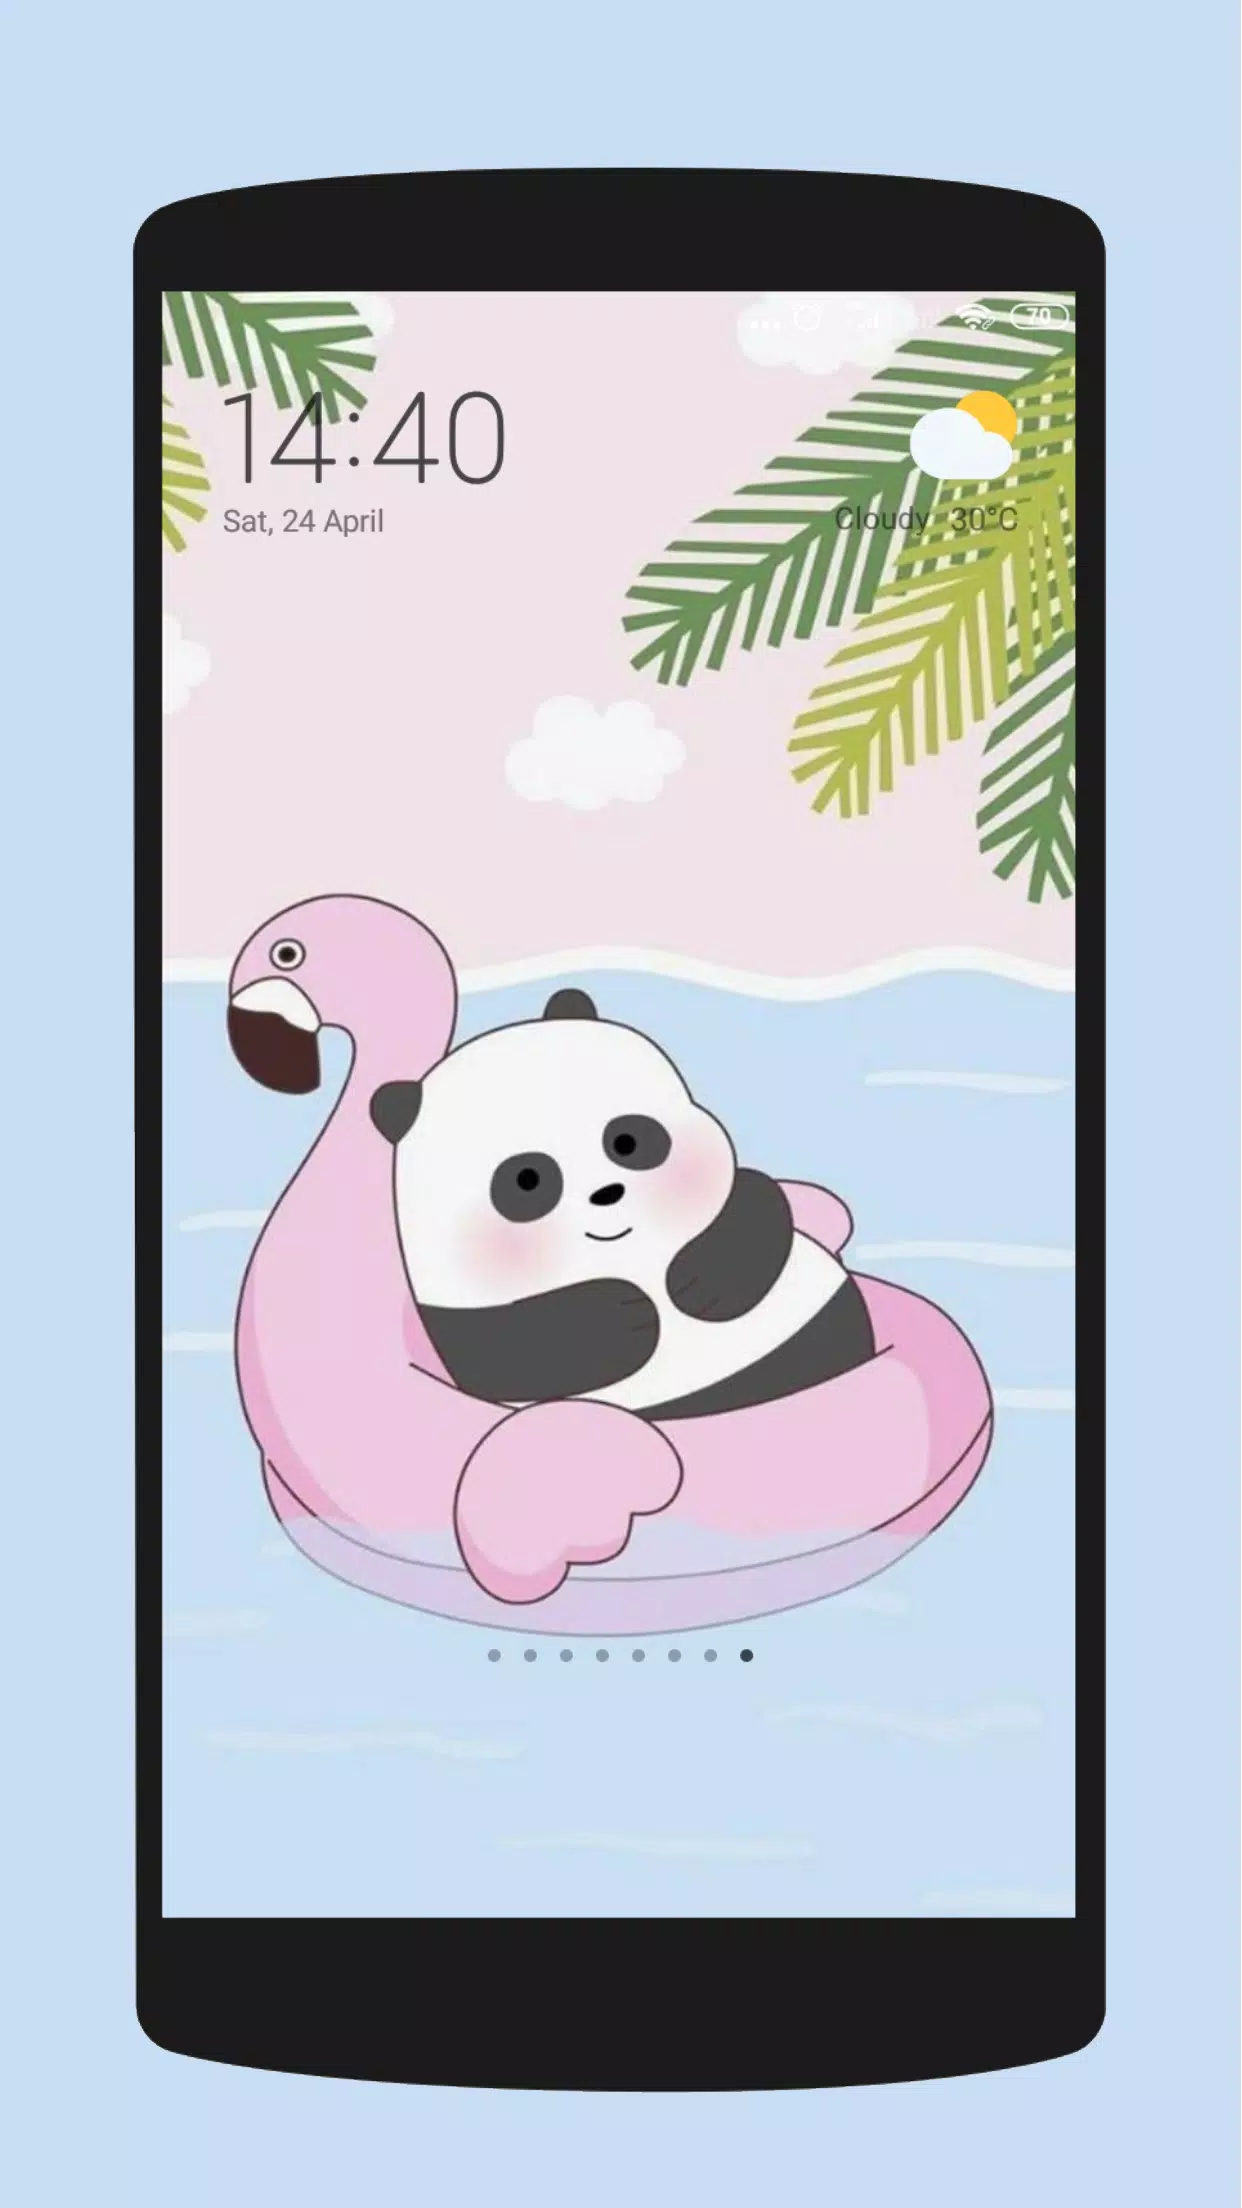 Cute bear cartoon wallpaper apk fãr android herunterladen